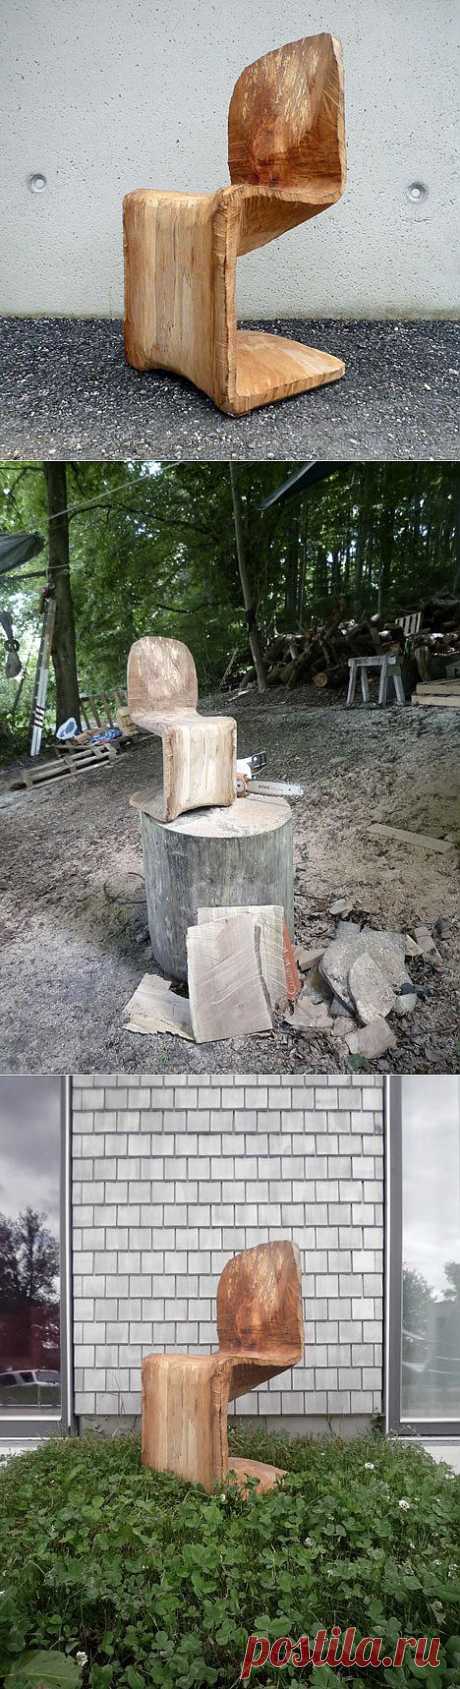 Деревянный стульчик от Матиаса Брендмайера (Matthias Brandmaier) - для дачных умельцев.